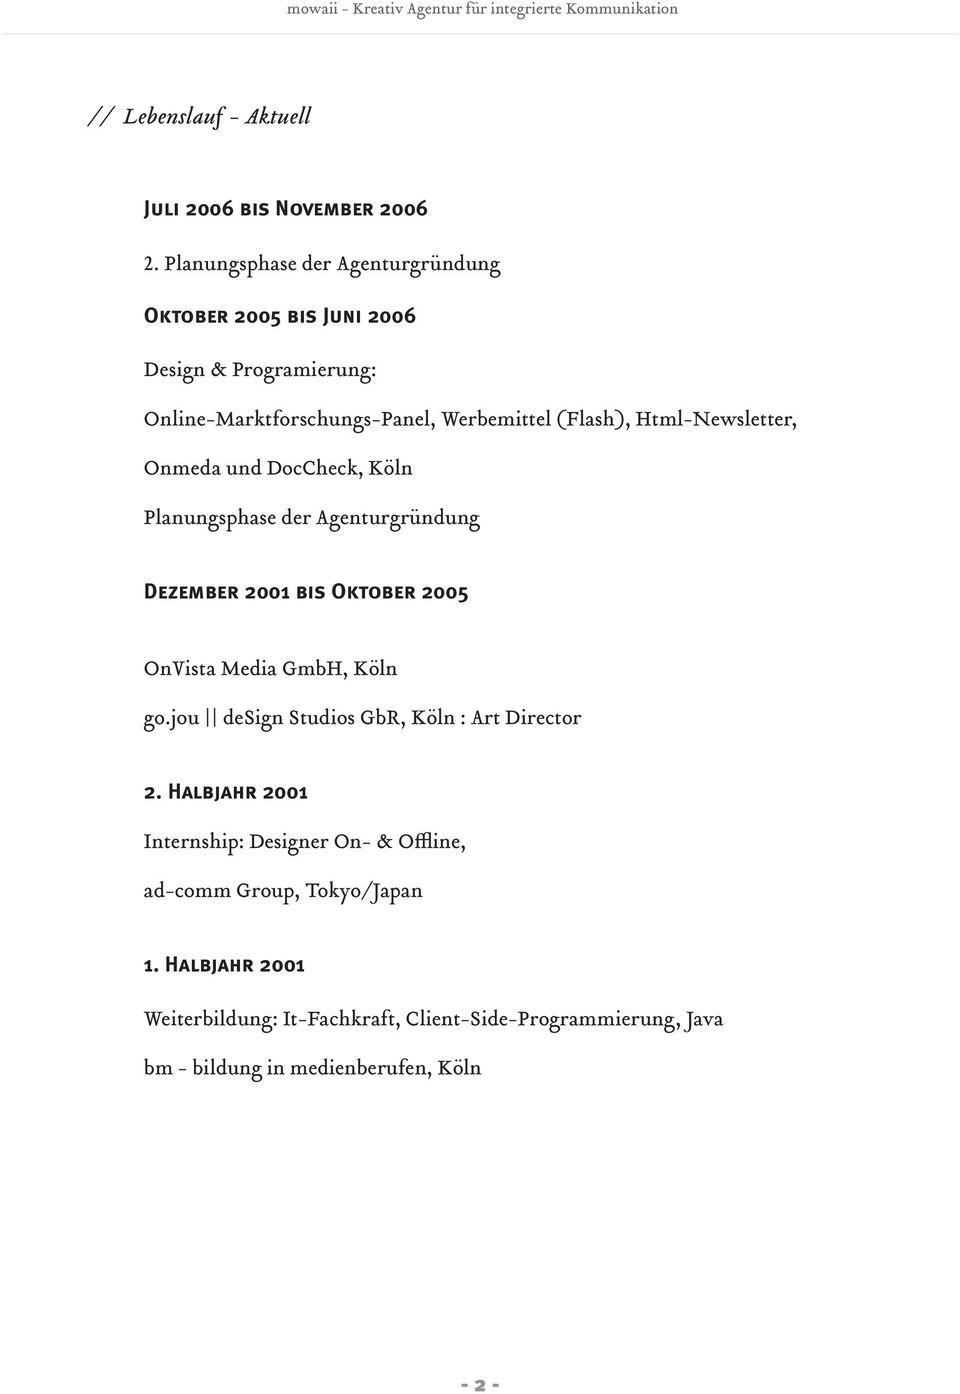 Html-Newsletter, Onmeda und DocCheck, Köln Planungsphase der Agenturgründung Dezember 2001 bis Oktober 2005 OnVista Media GmbH, Köln go.